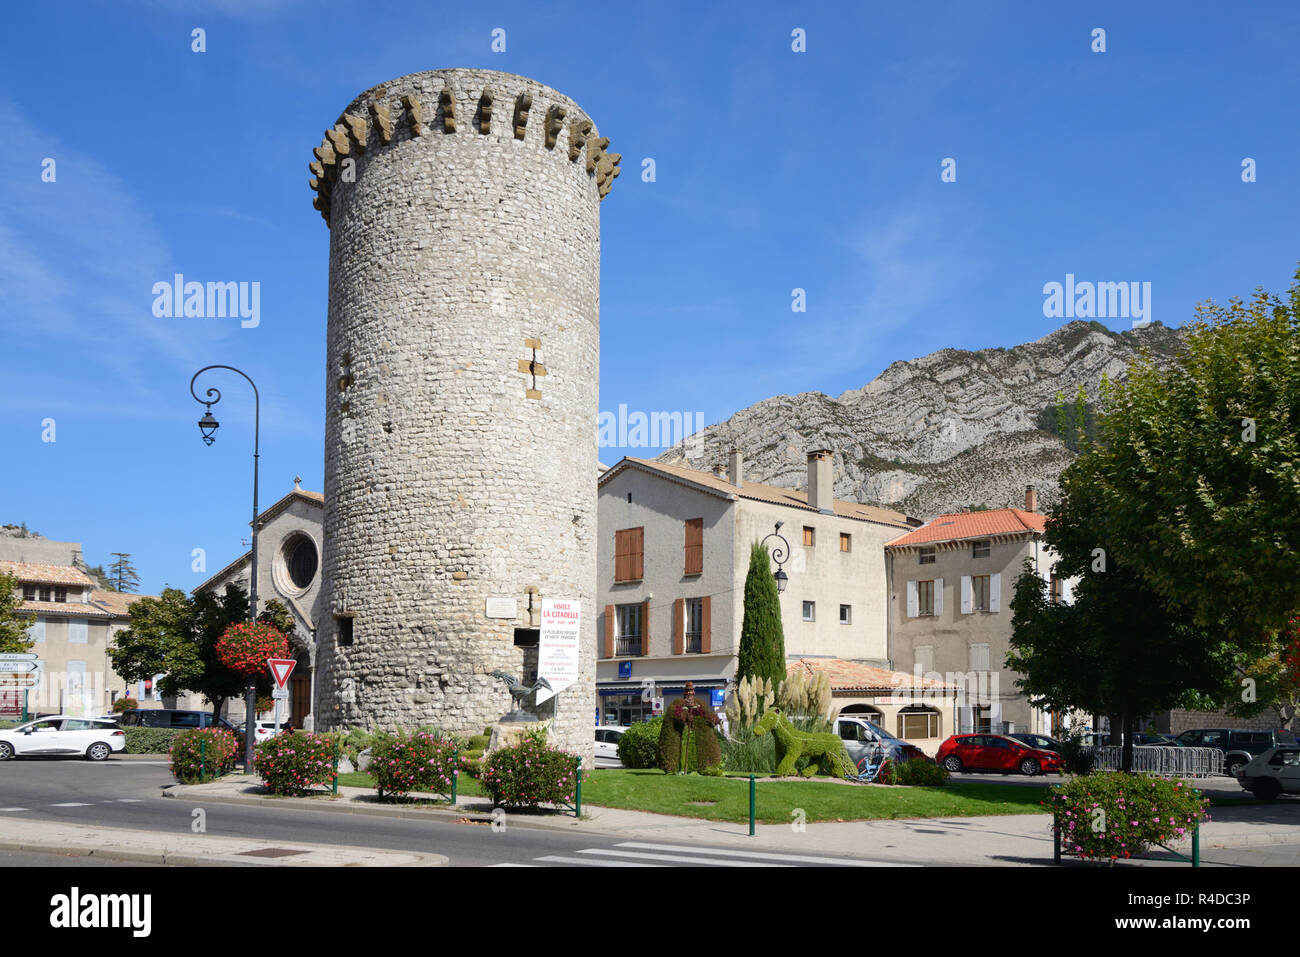 Medievale torre in pietra, il Tour de la Médisance, parte delle mura medievali della città o città fortificata, costruita nel 1370, Sisteron Provenza Foto Stock